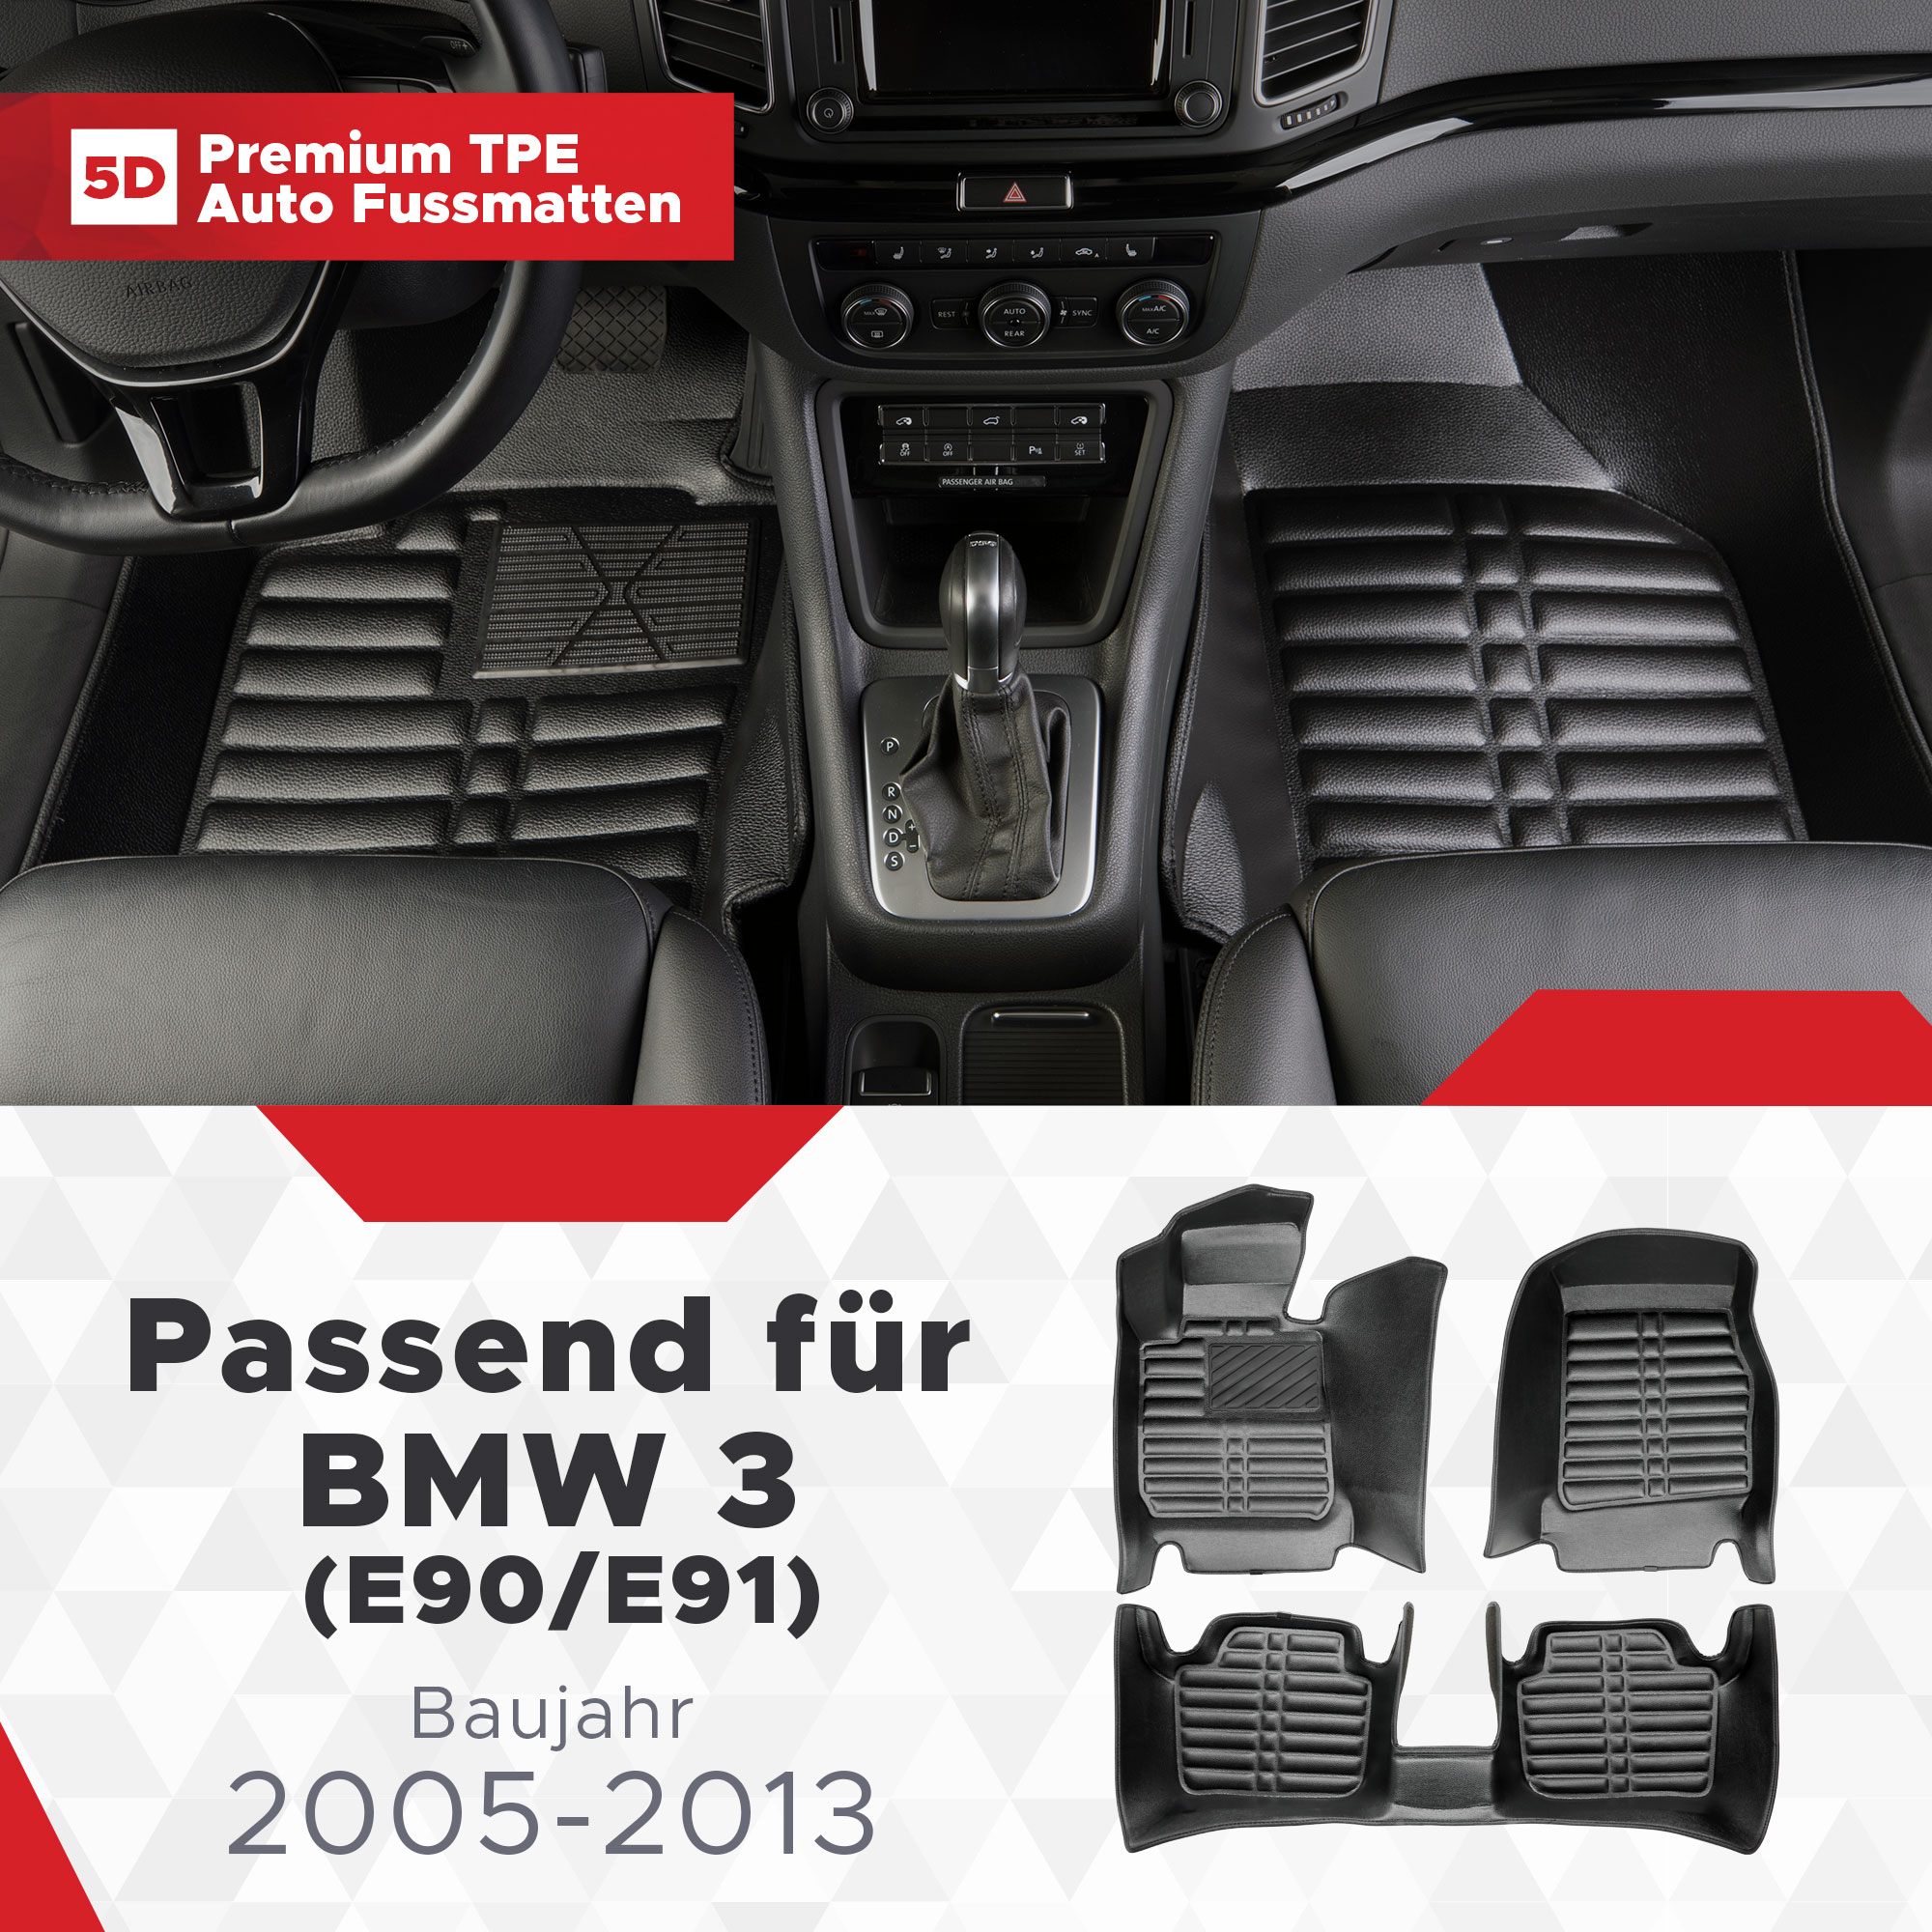 (E90/E91) TPE 3 Fussmatten Bj 5D 2005-2013 BMW